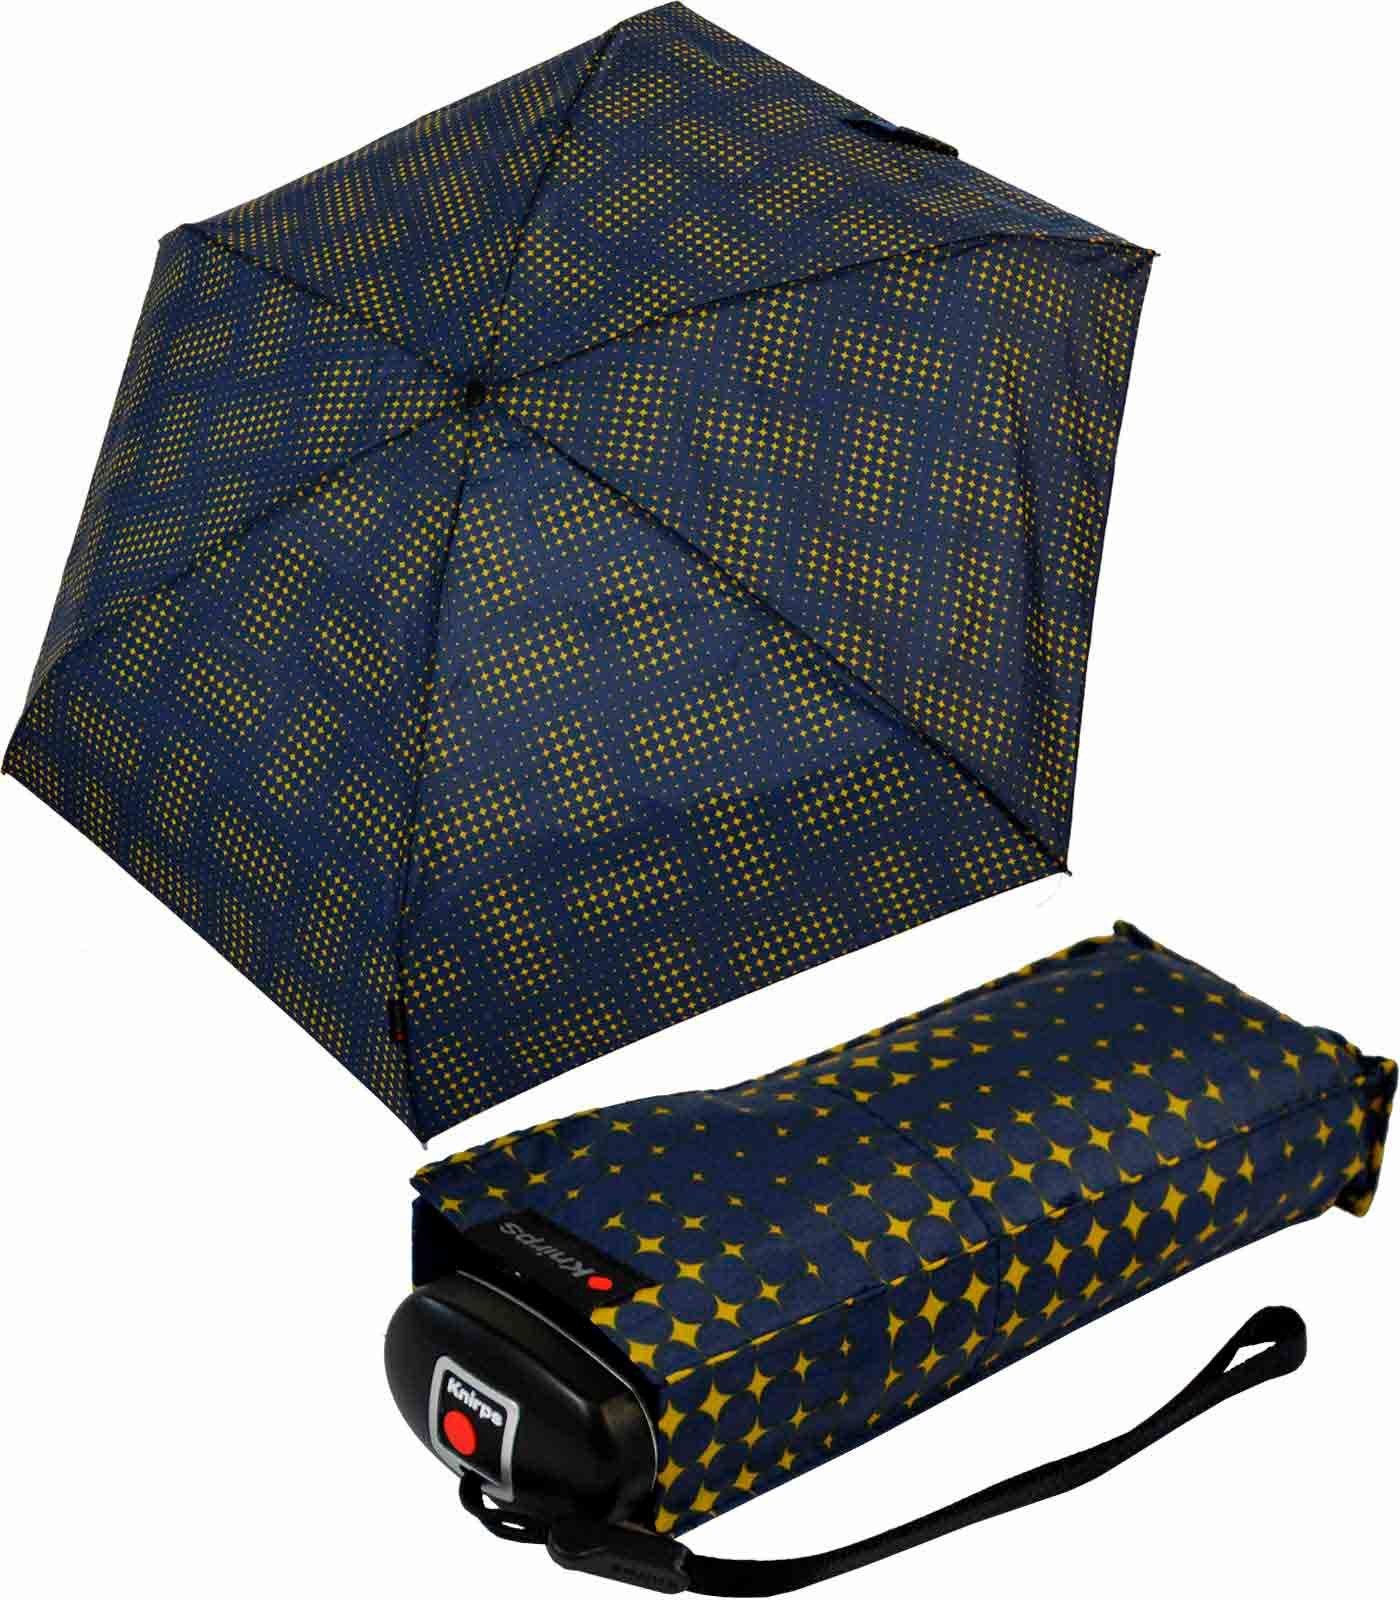 Knirps® Taschenregenschirm Mini-Schirm Travel klein leicht kompakt - stars, der zuverlässige Begleiter, der in jede Tasche passt